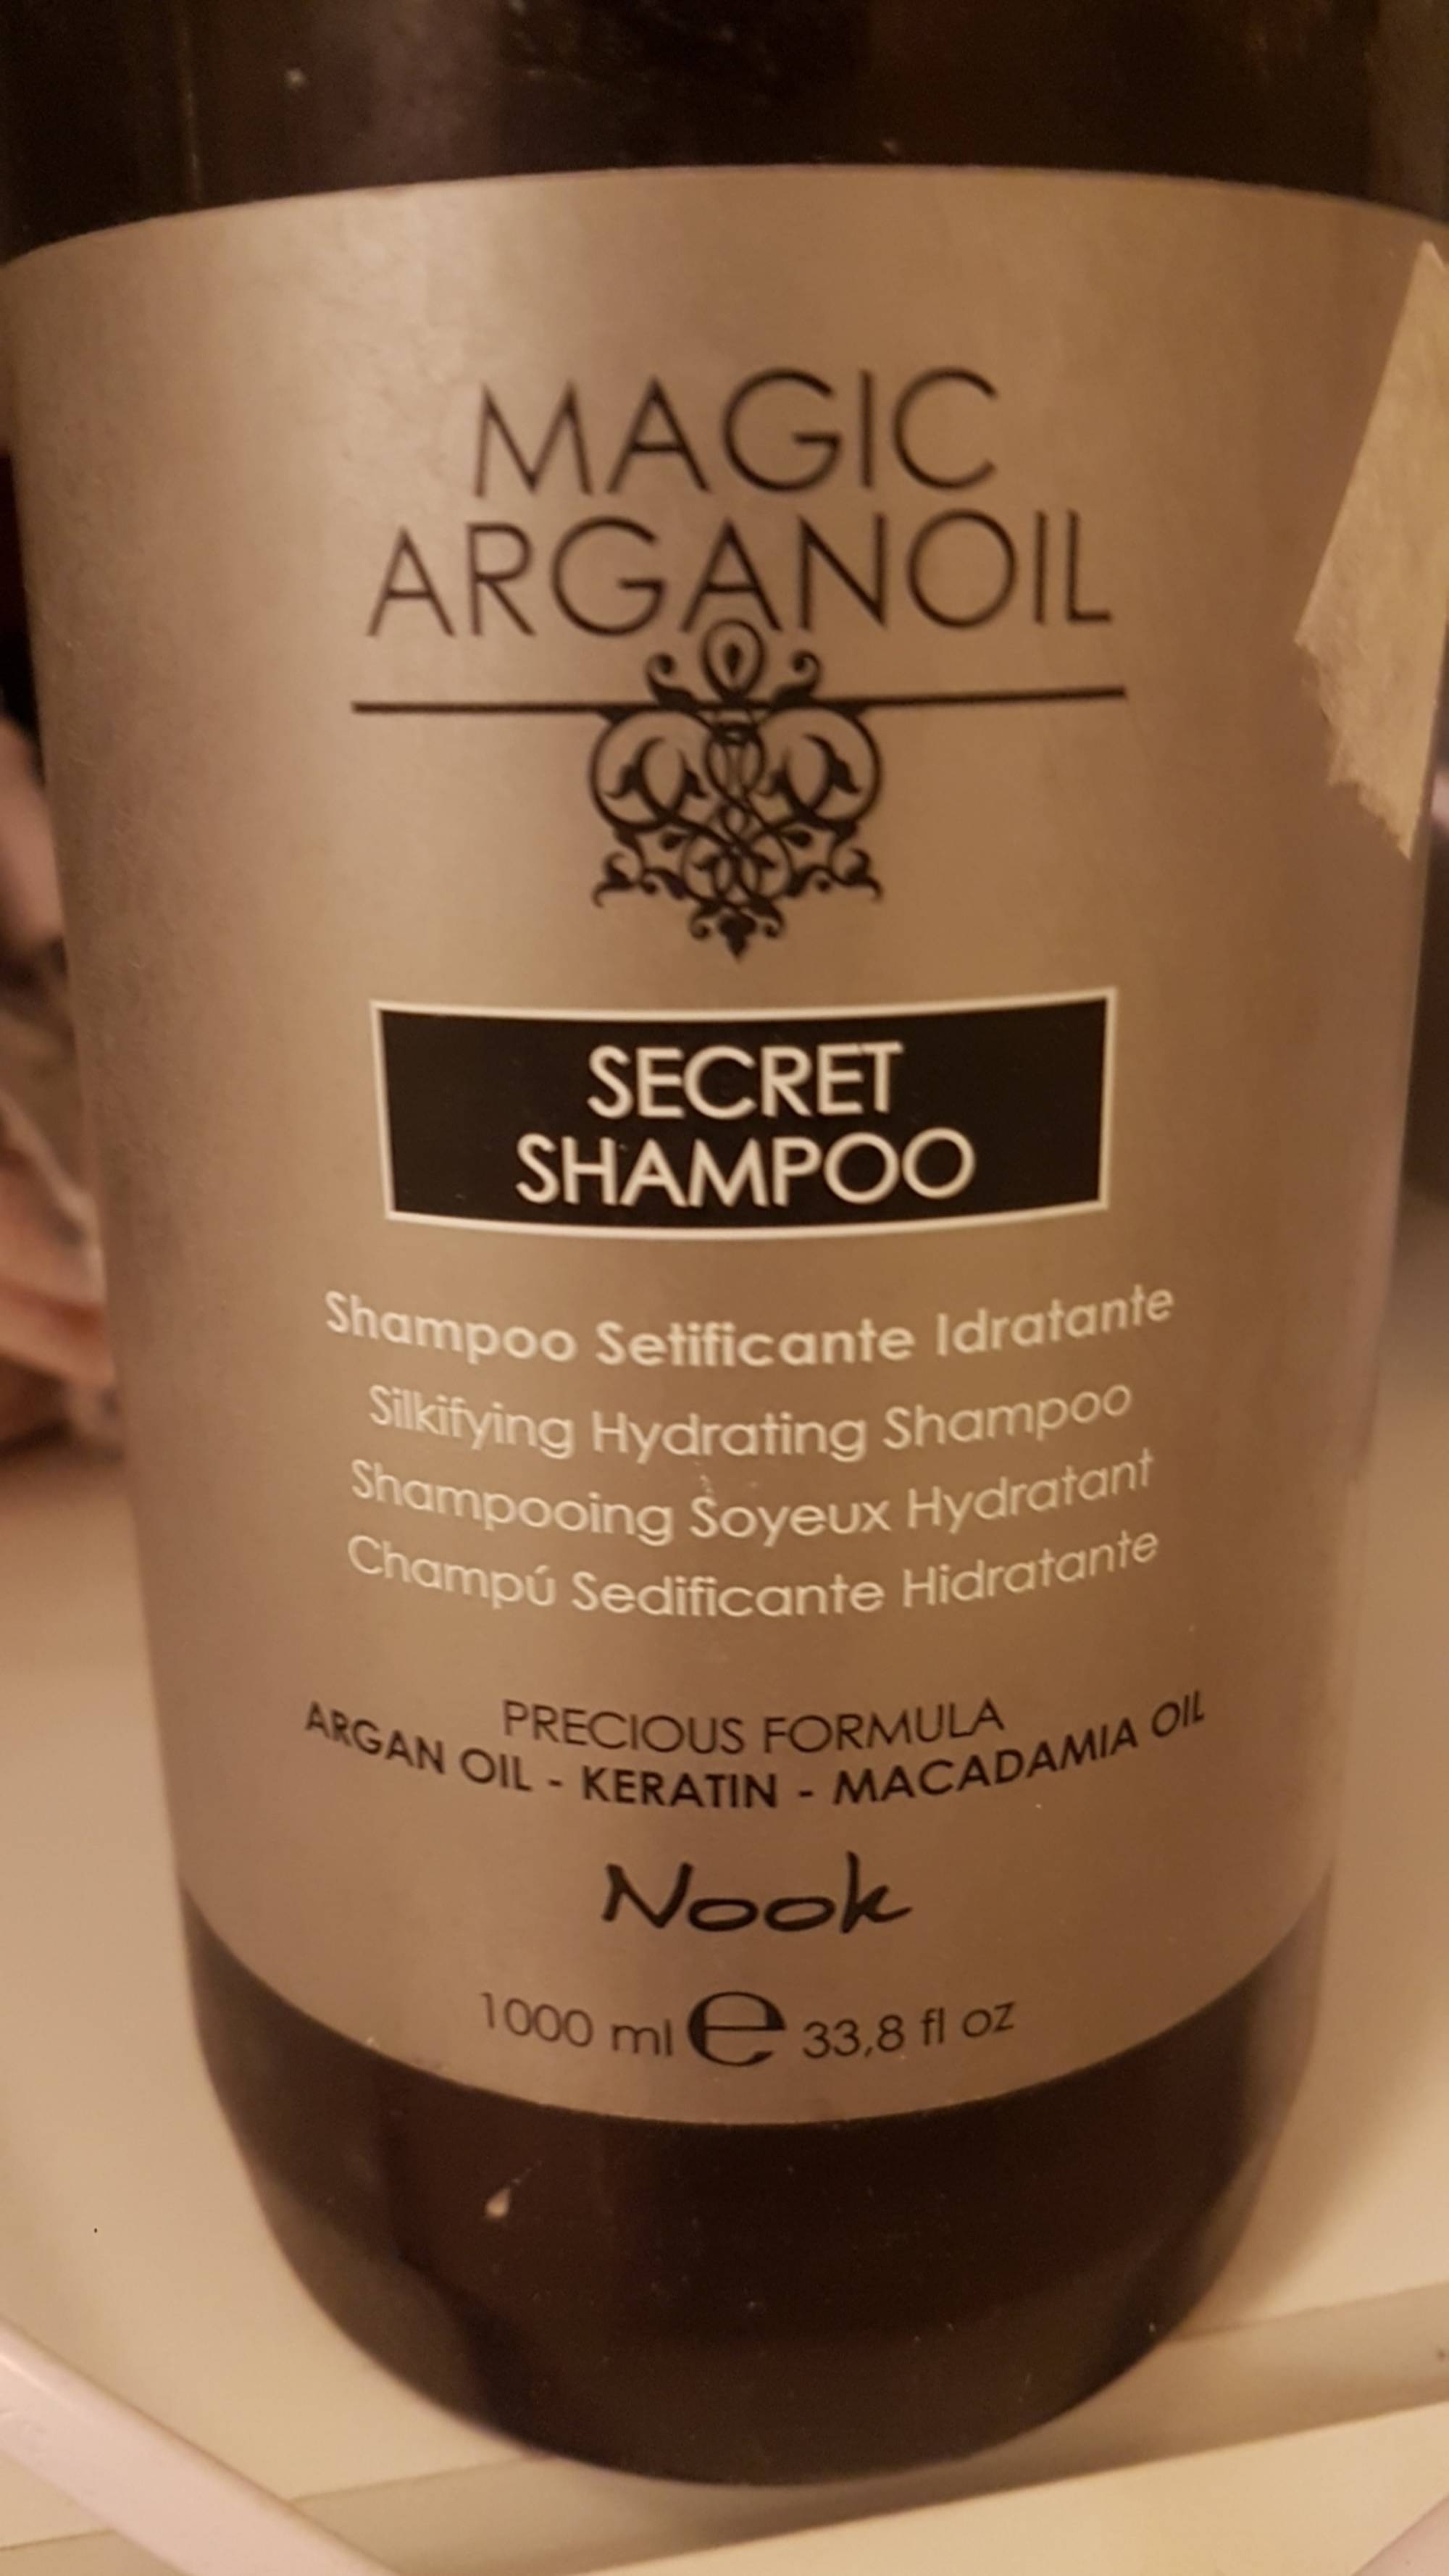 NOOK - Magic argan oil - Secret shampoo 